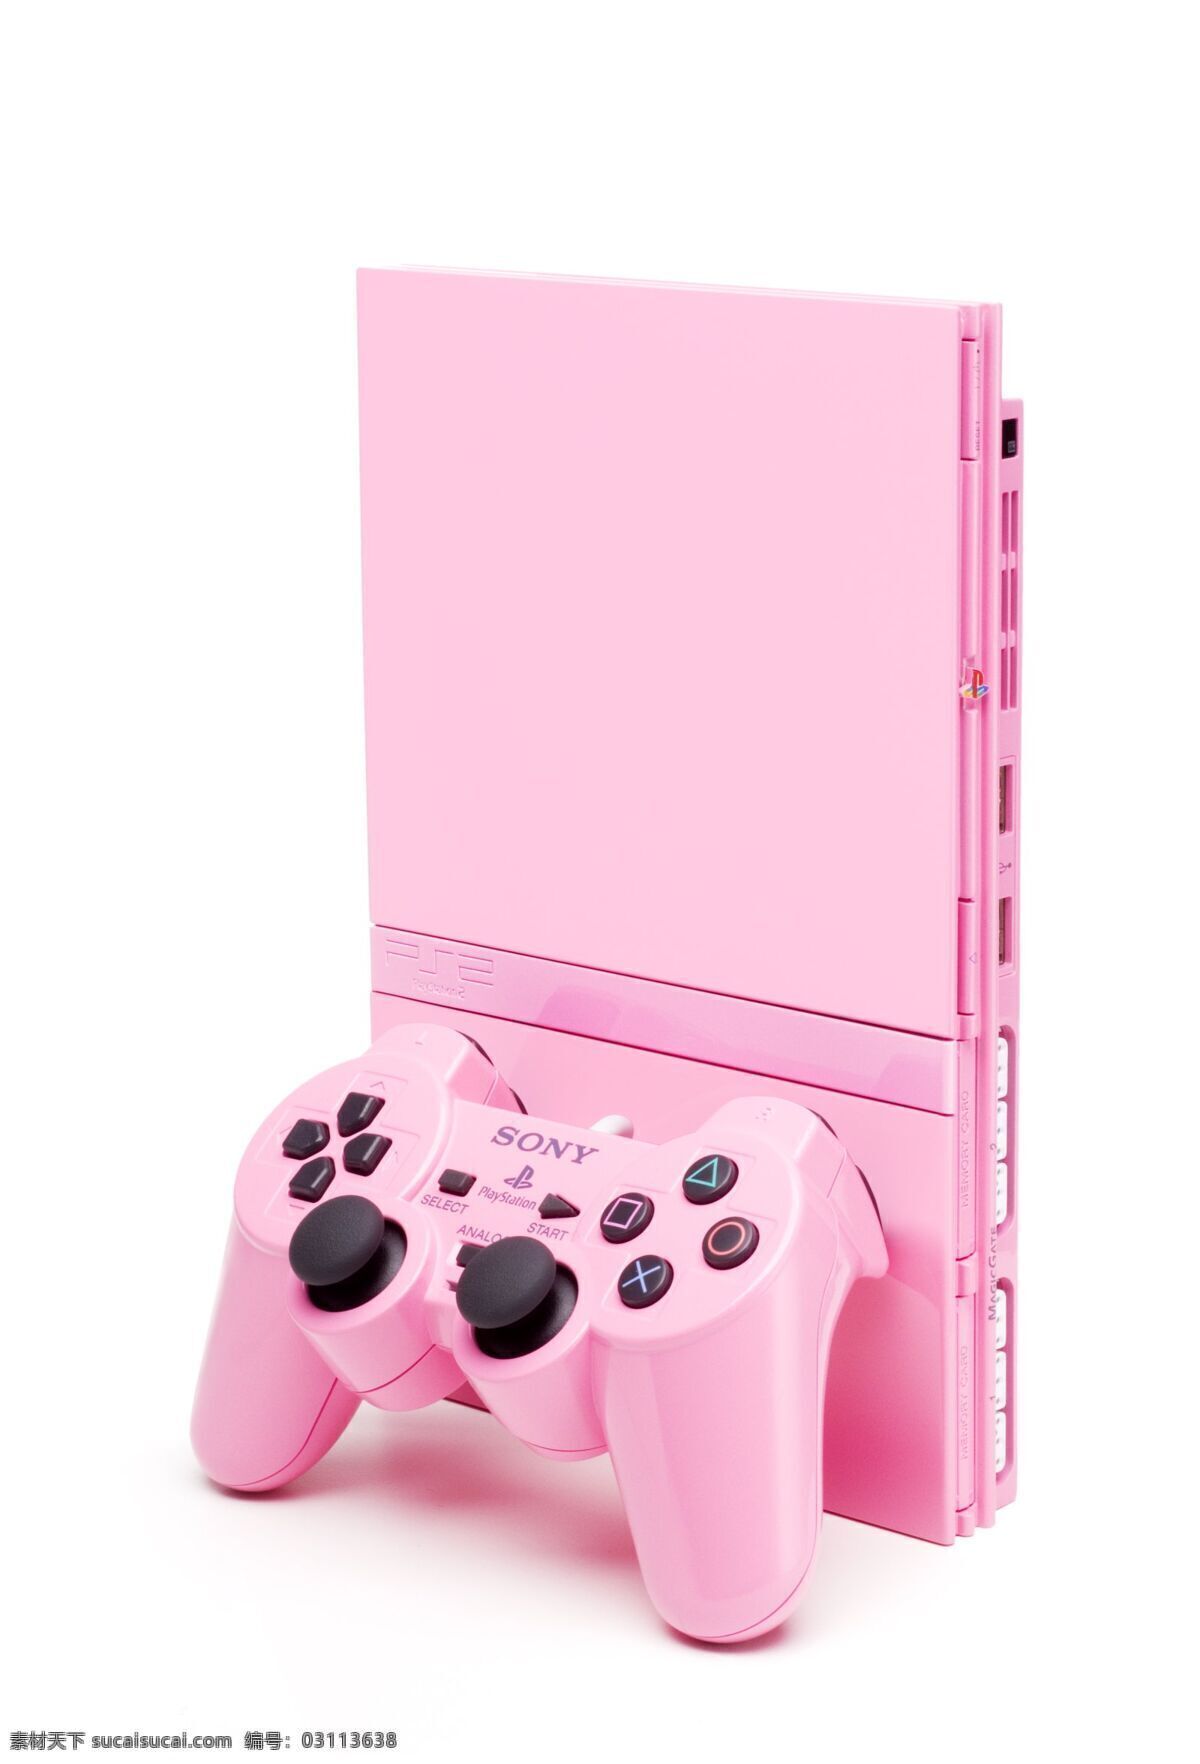 电子产品 粉色 奢侈品 生活百科 生活素材 时尚 游戏机 粉色游戏机 手柄 可爱游戏机 女人游戏机 一套 淘宝素材 其他淘宝素材